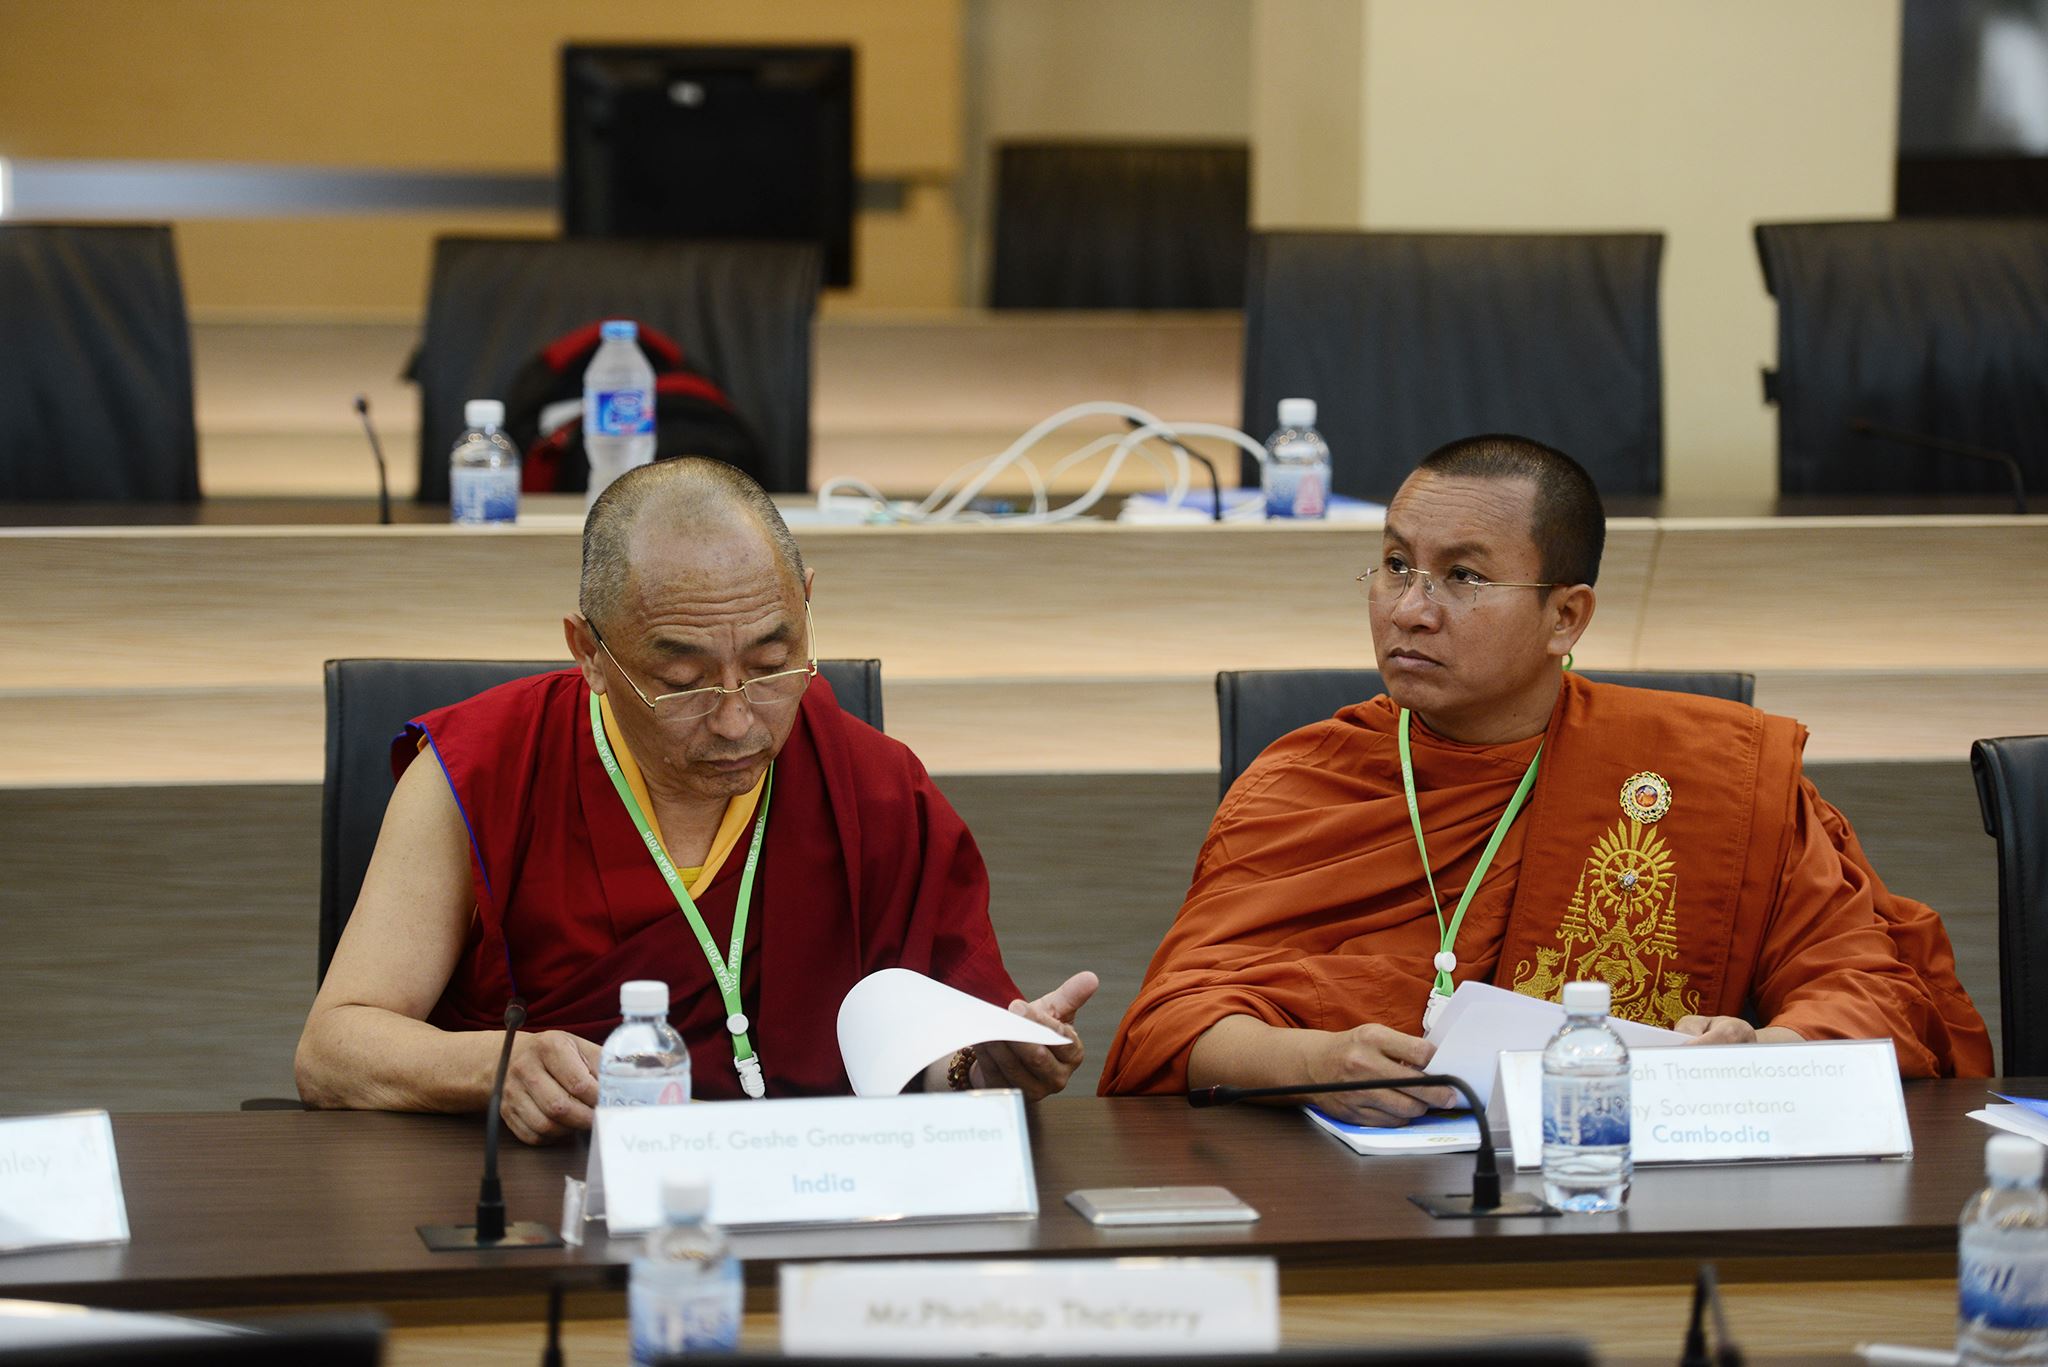 A Buddhista Egyetemek Nemzetközi Szervezetének ülése Thaiföldön a Vészákh ünnepség előtt.